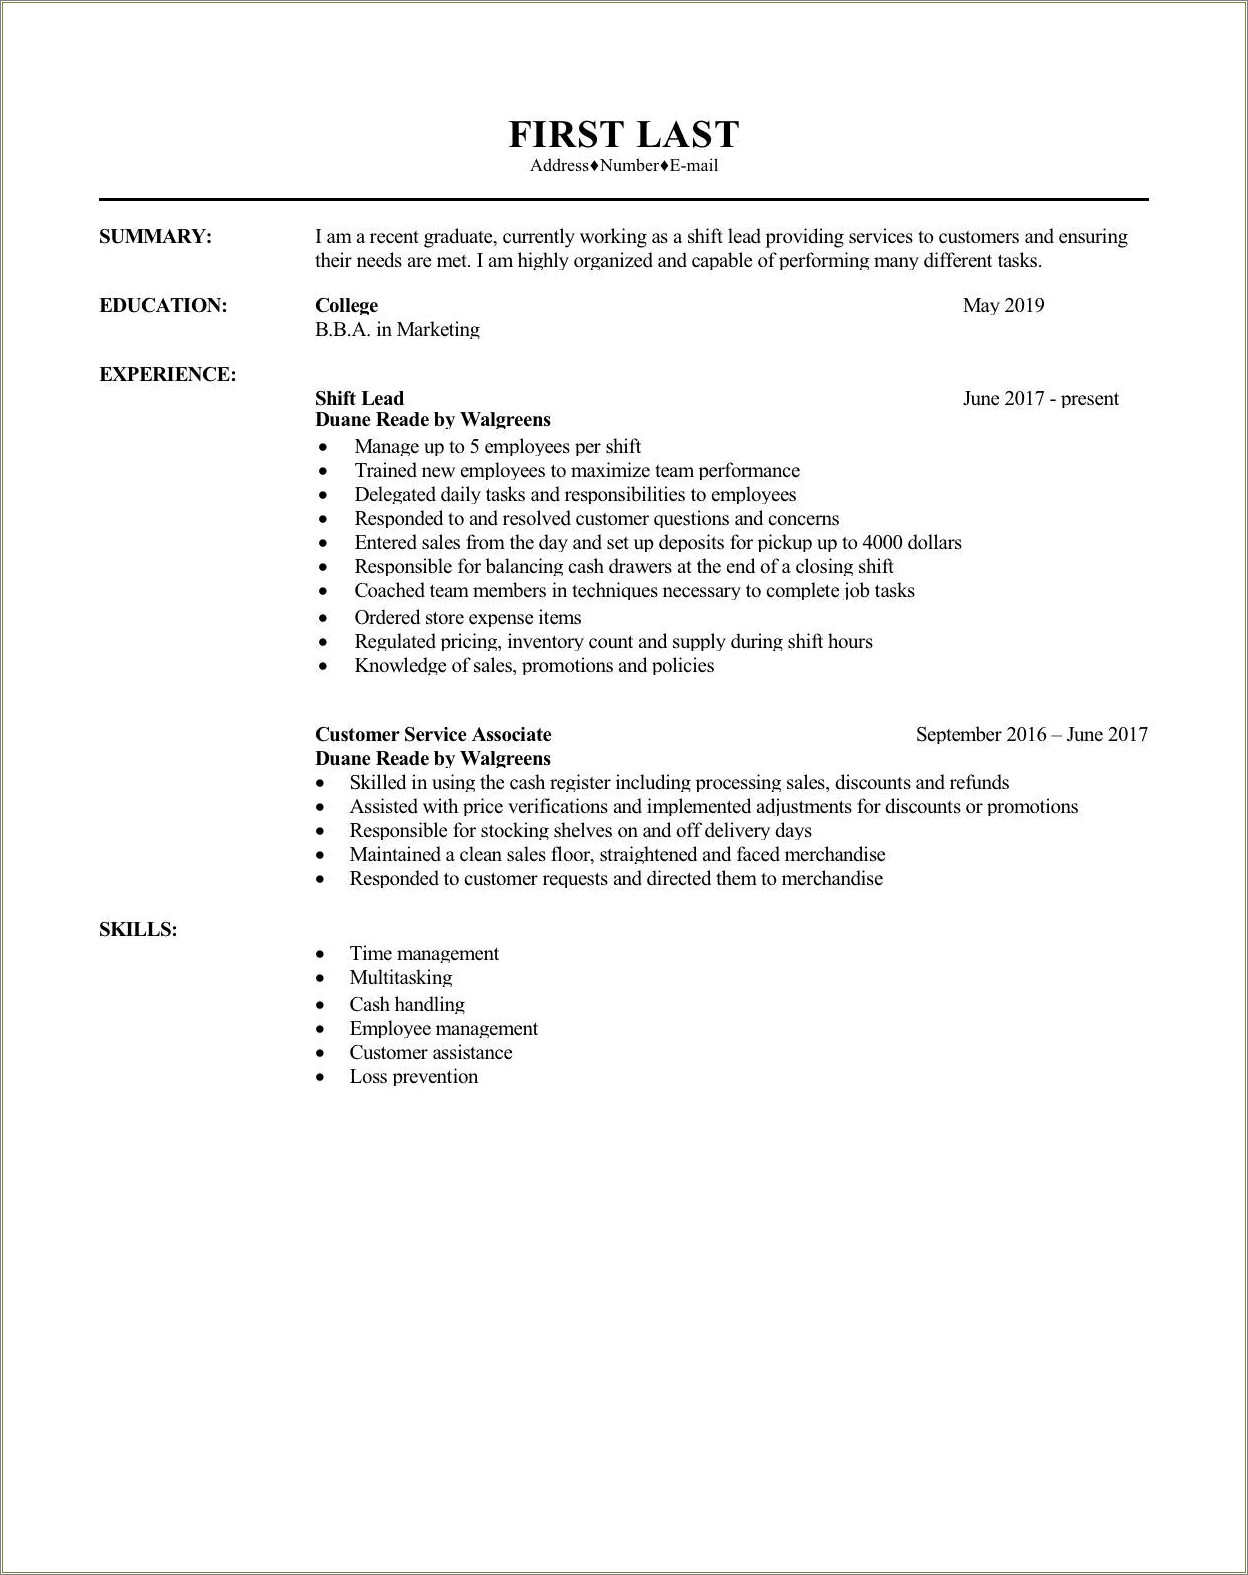 Walgreens Shift Lead Job Description For Resume